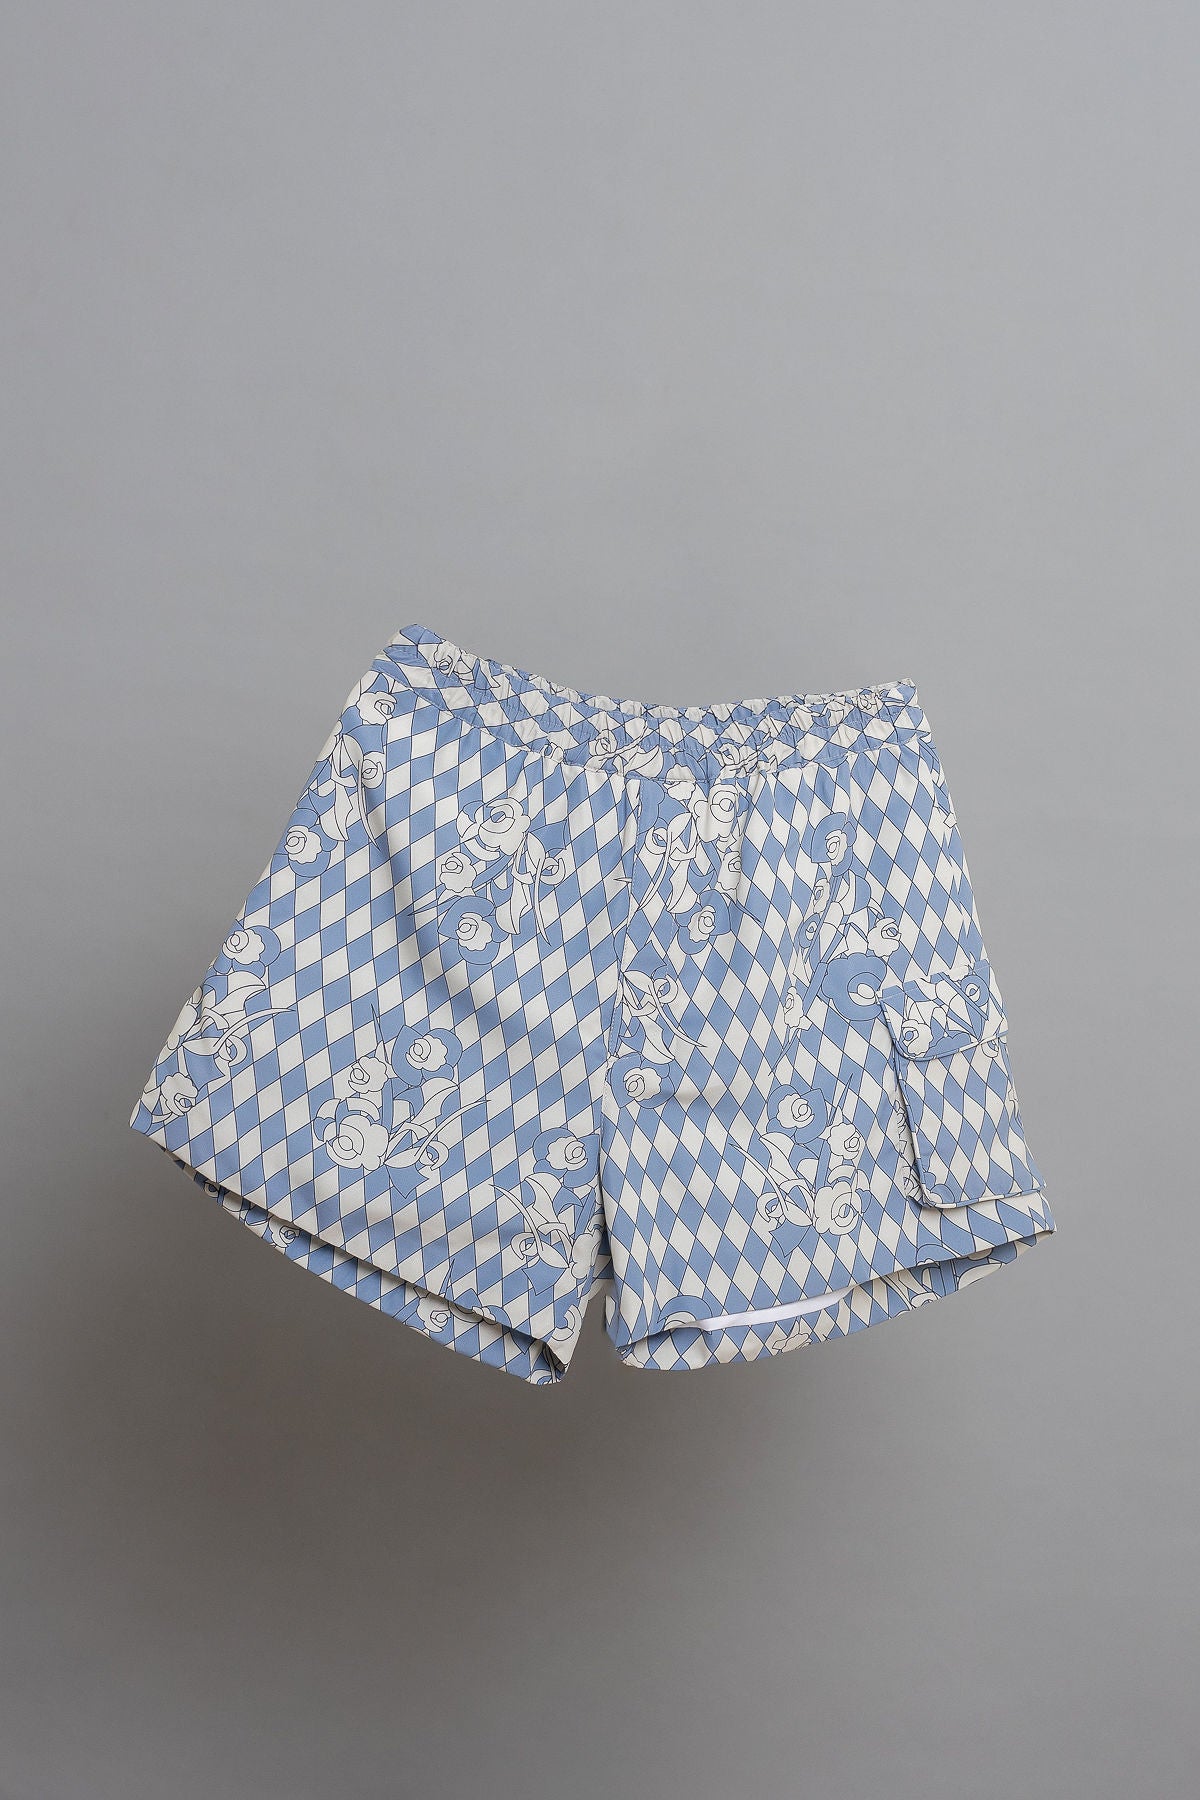 Giacomo printed men's shorts - Shantall Lacayo